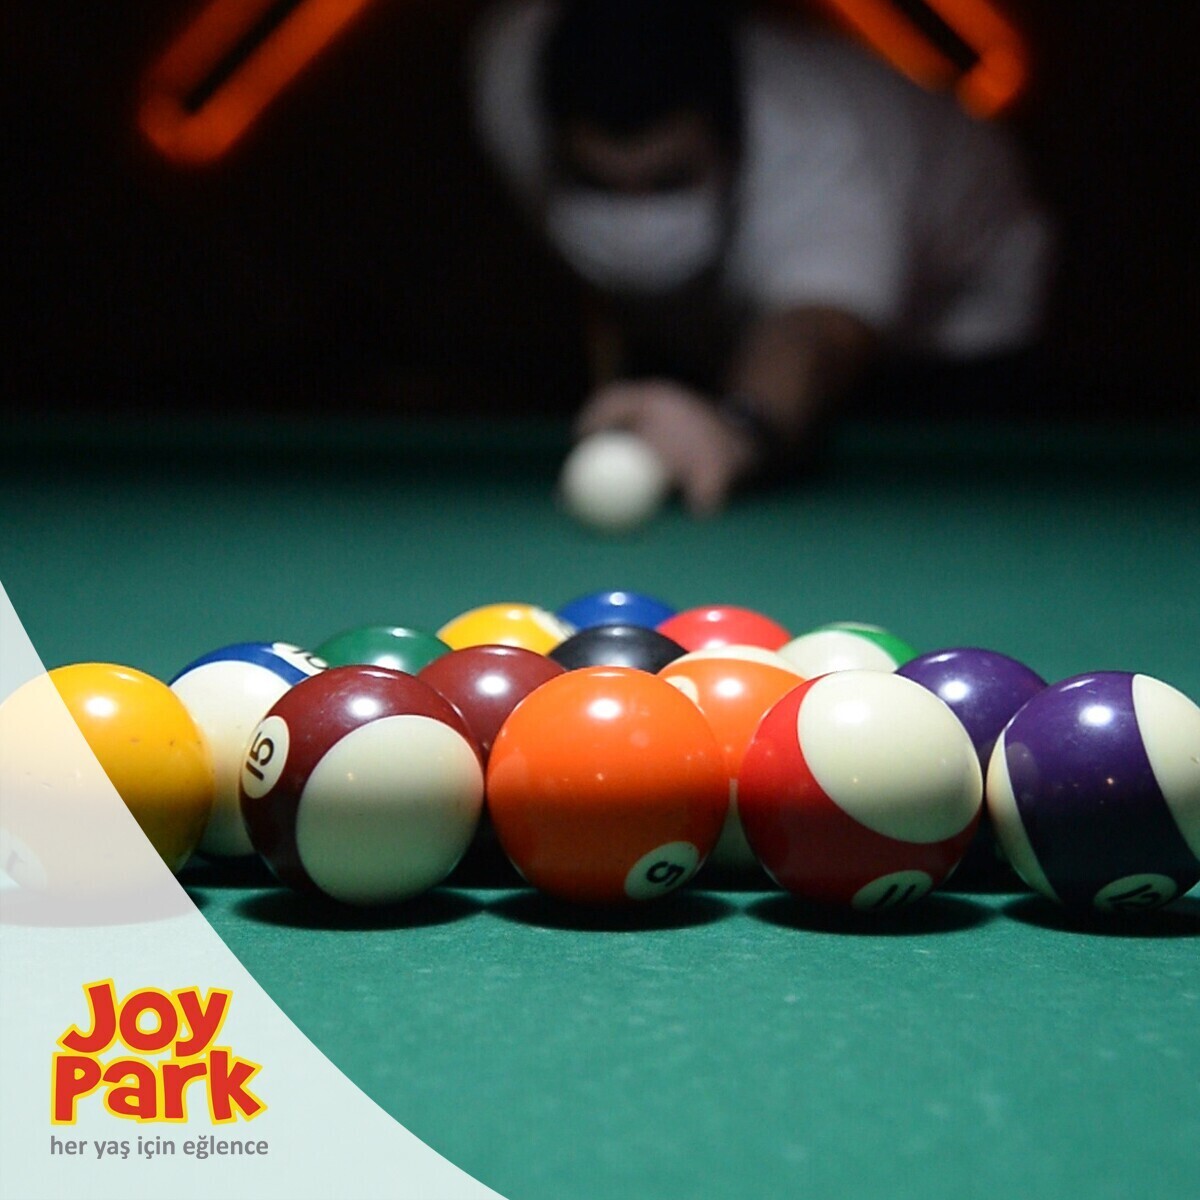 JoyPark Bursa Şubelerinde Geçerli 350 TL'lik Oyun Kartı 299 TL!